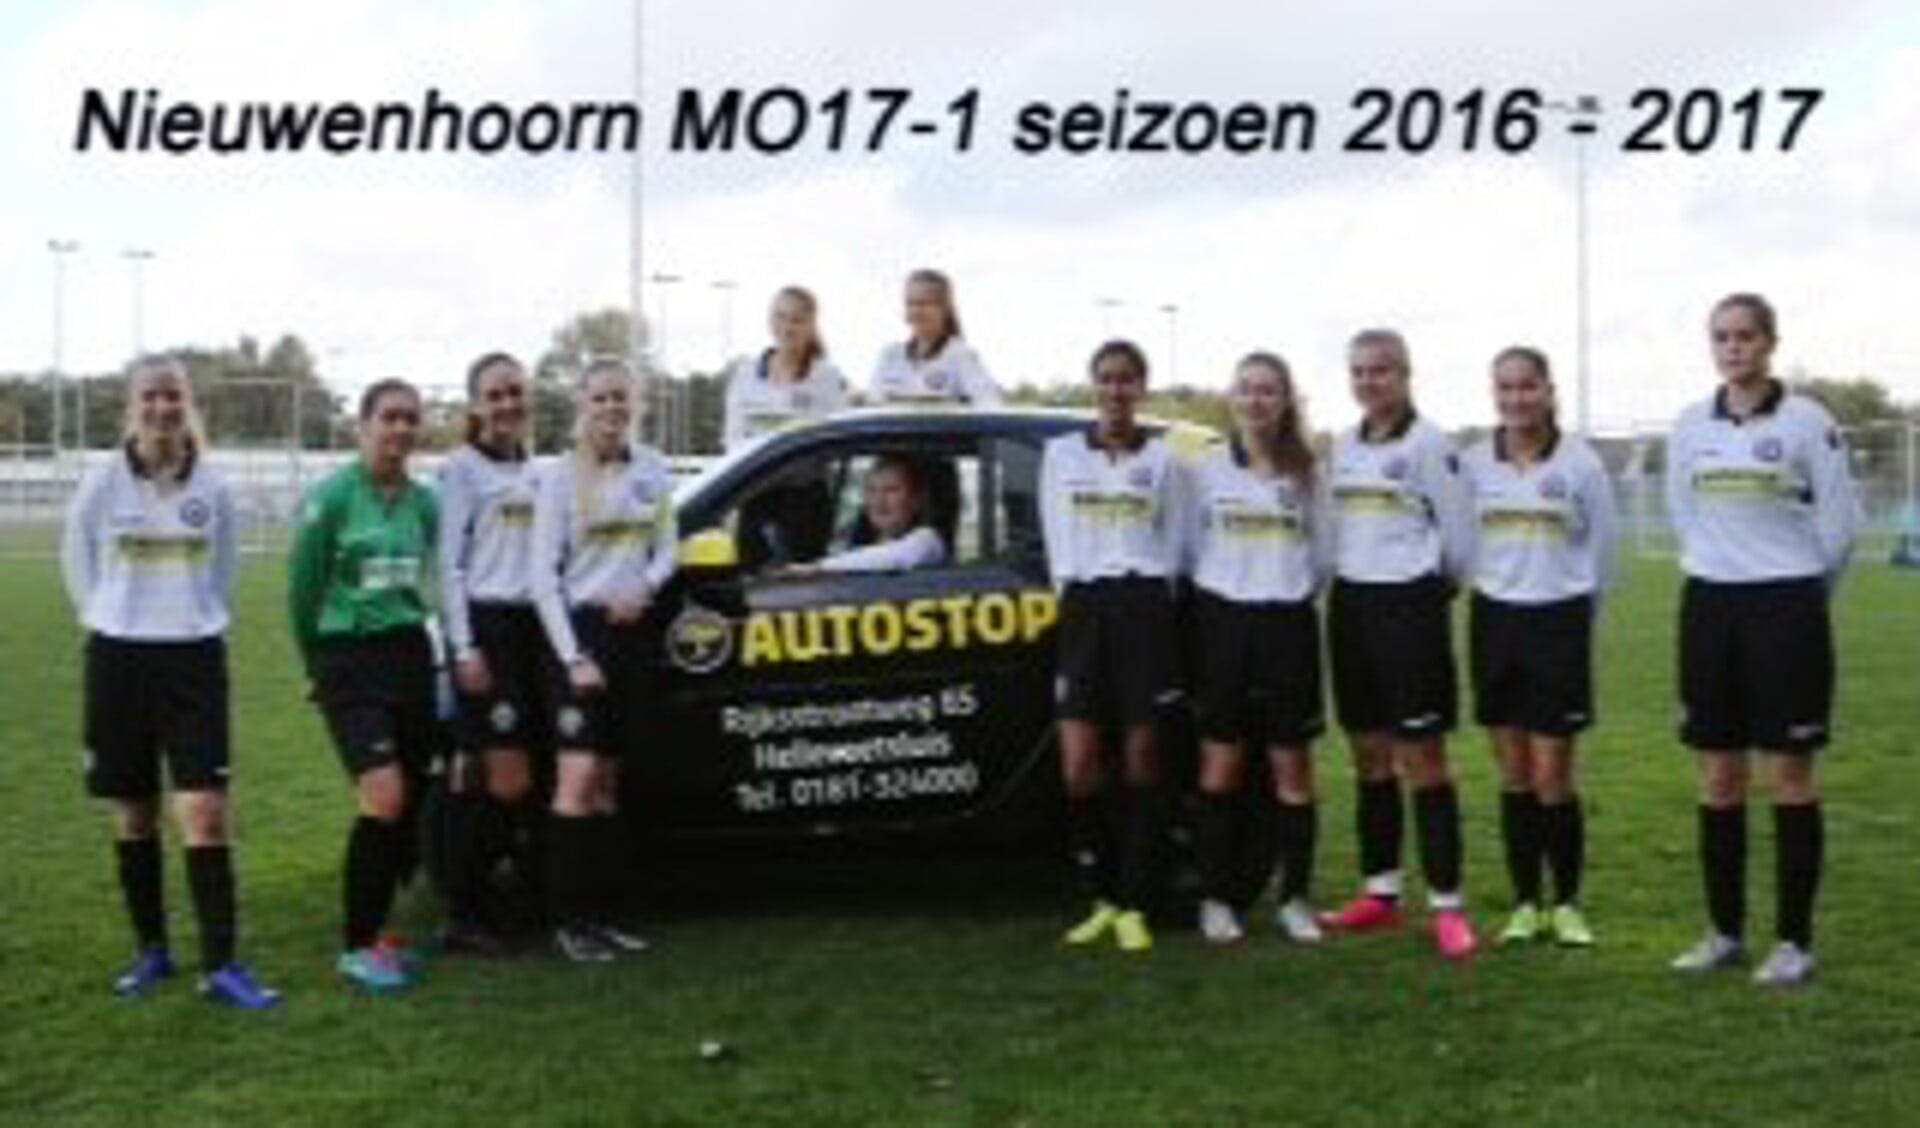 Meld je nu aan voor een sportieve meiden voetbal middag bij v.v. Nieuwenhoorn